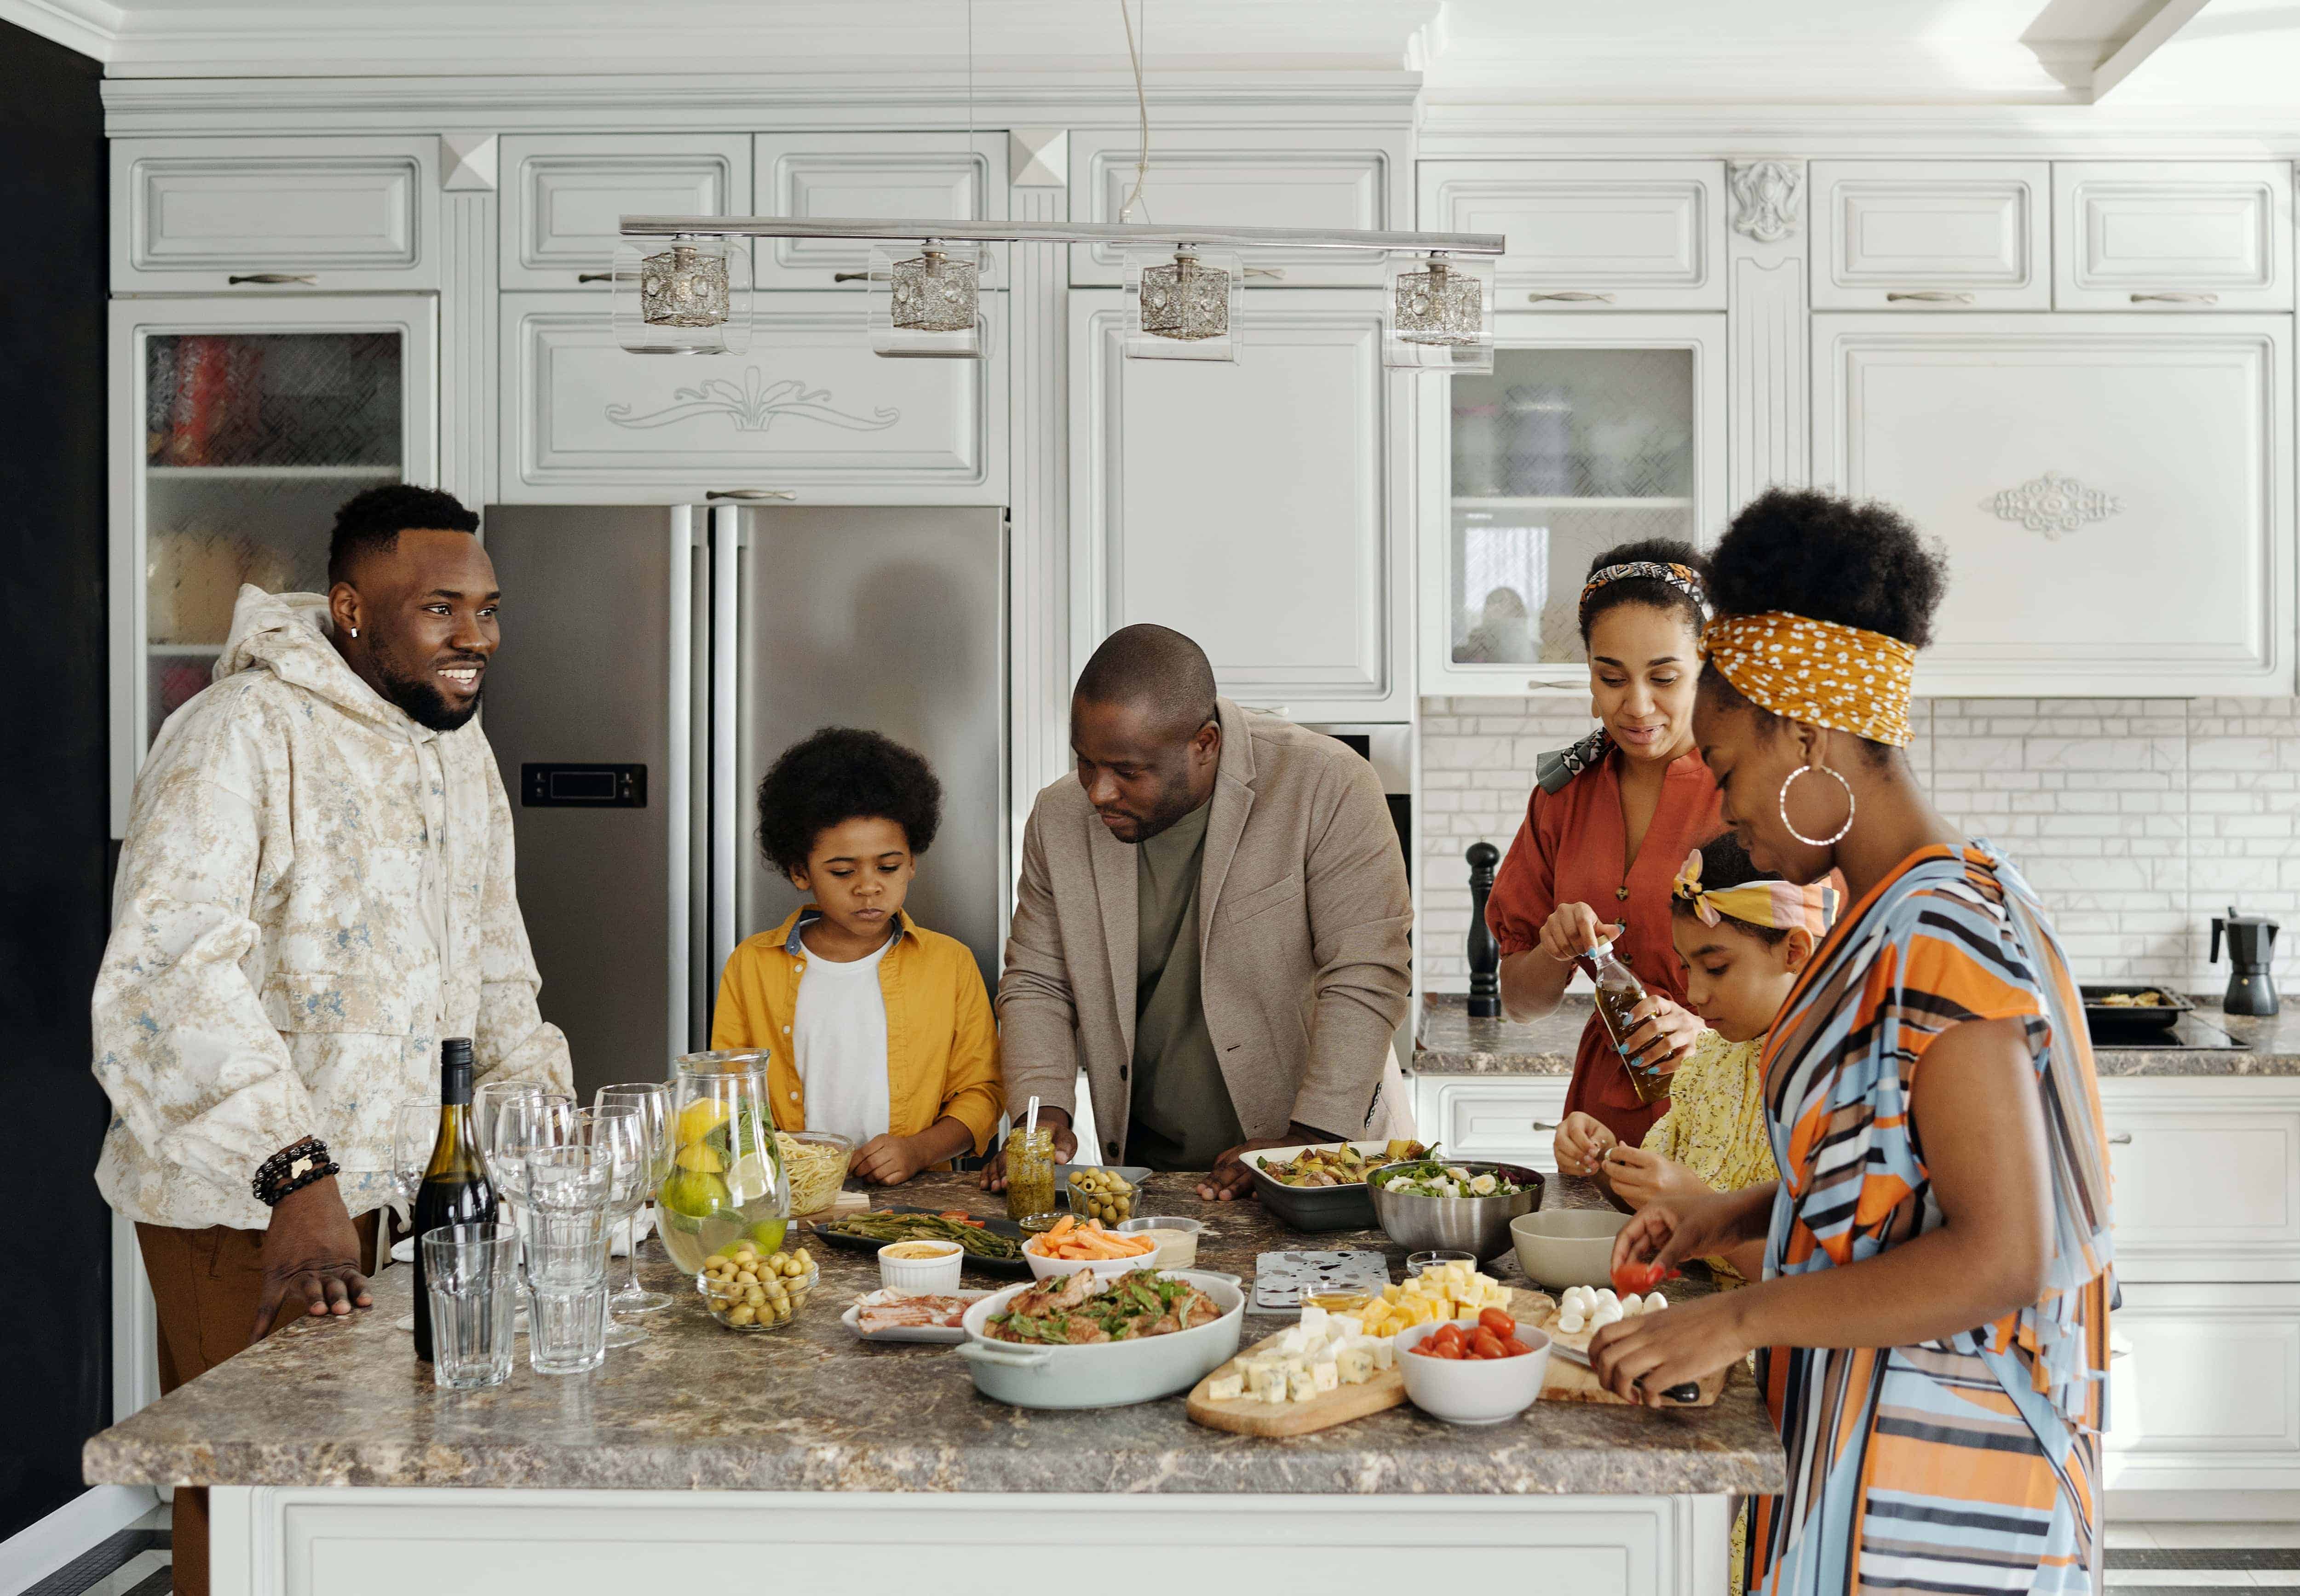 Family in front of fridge. - via fridge.com